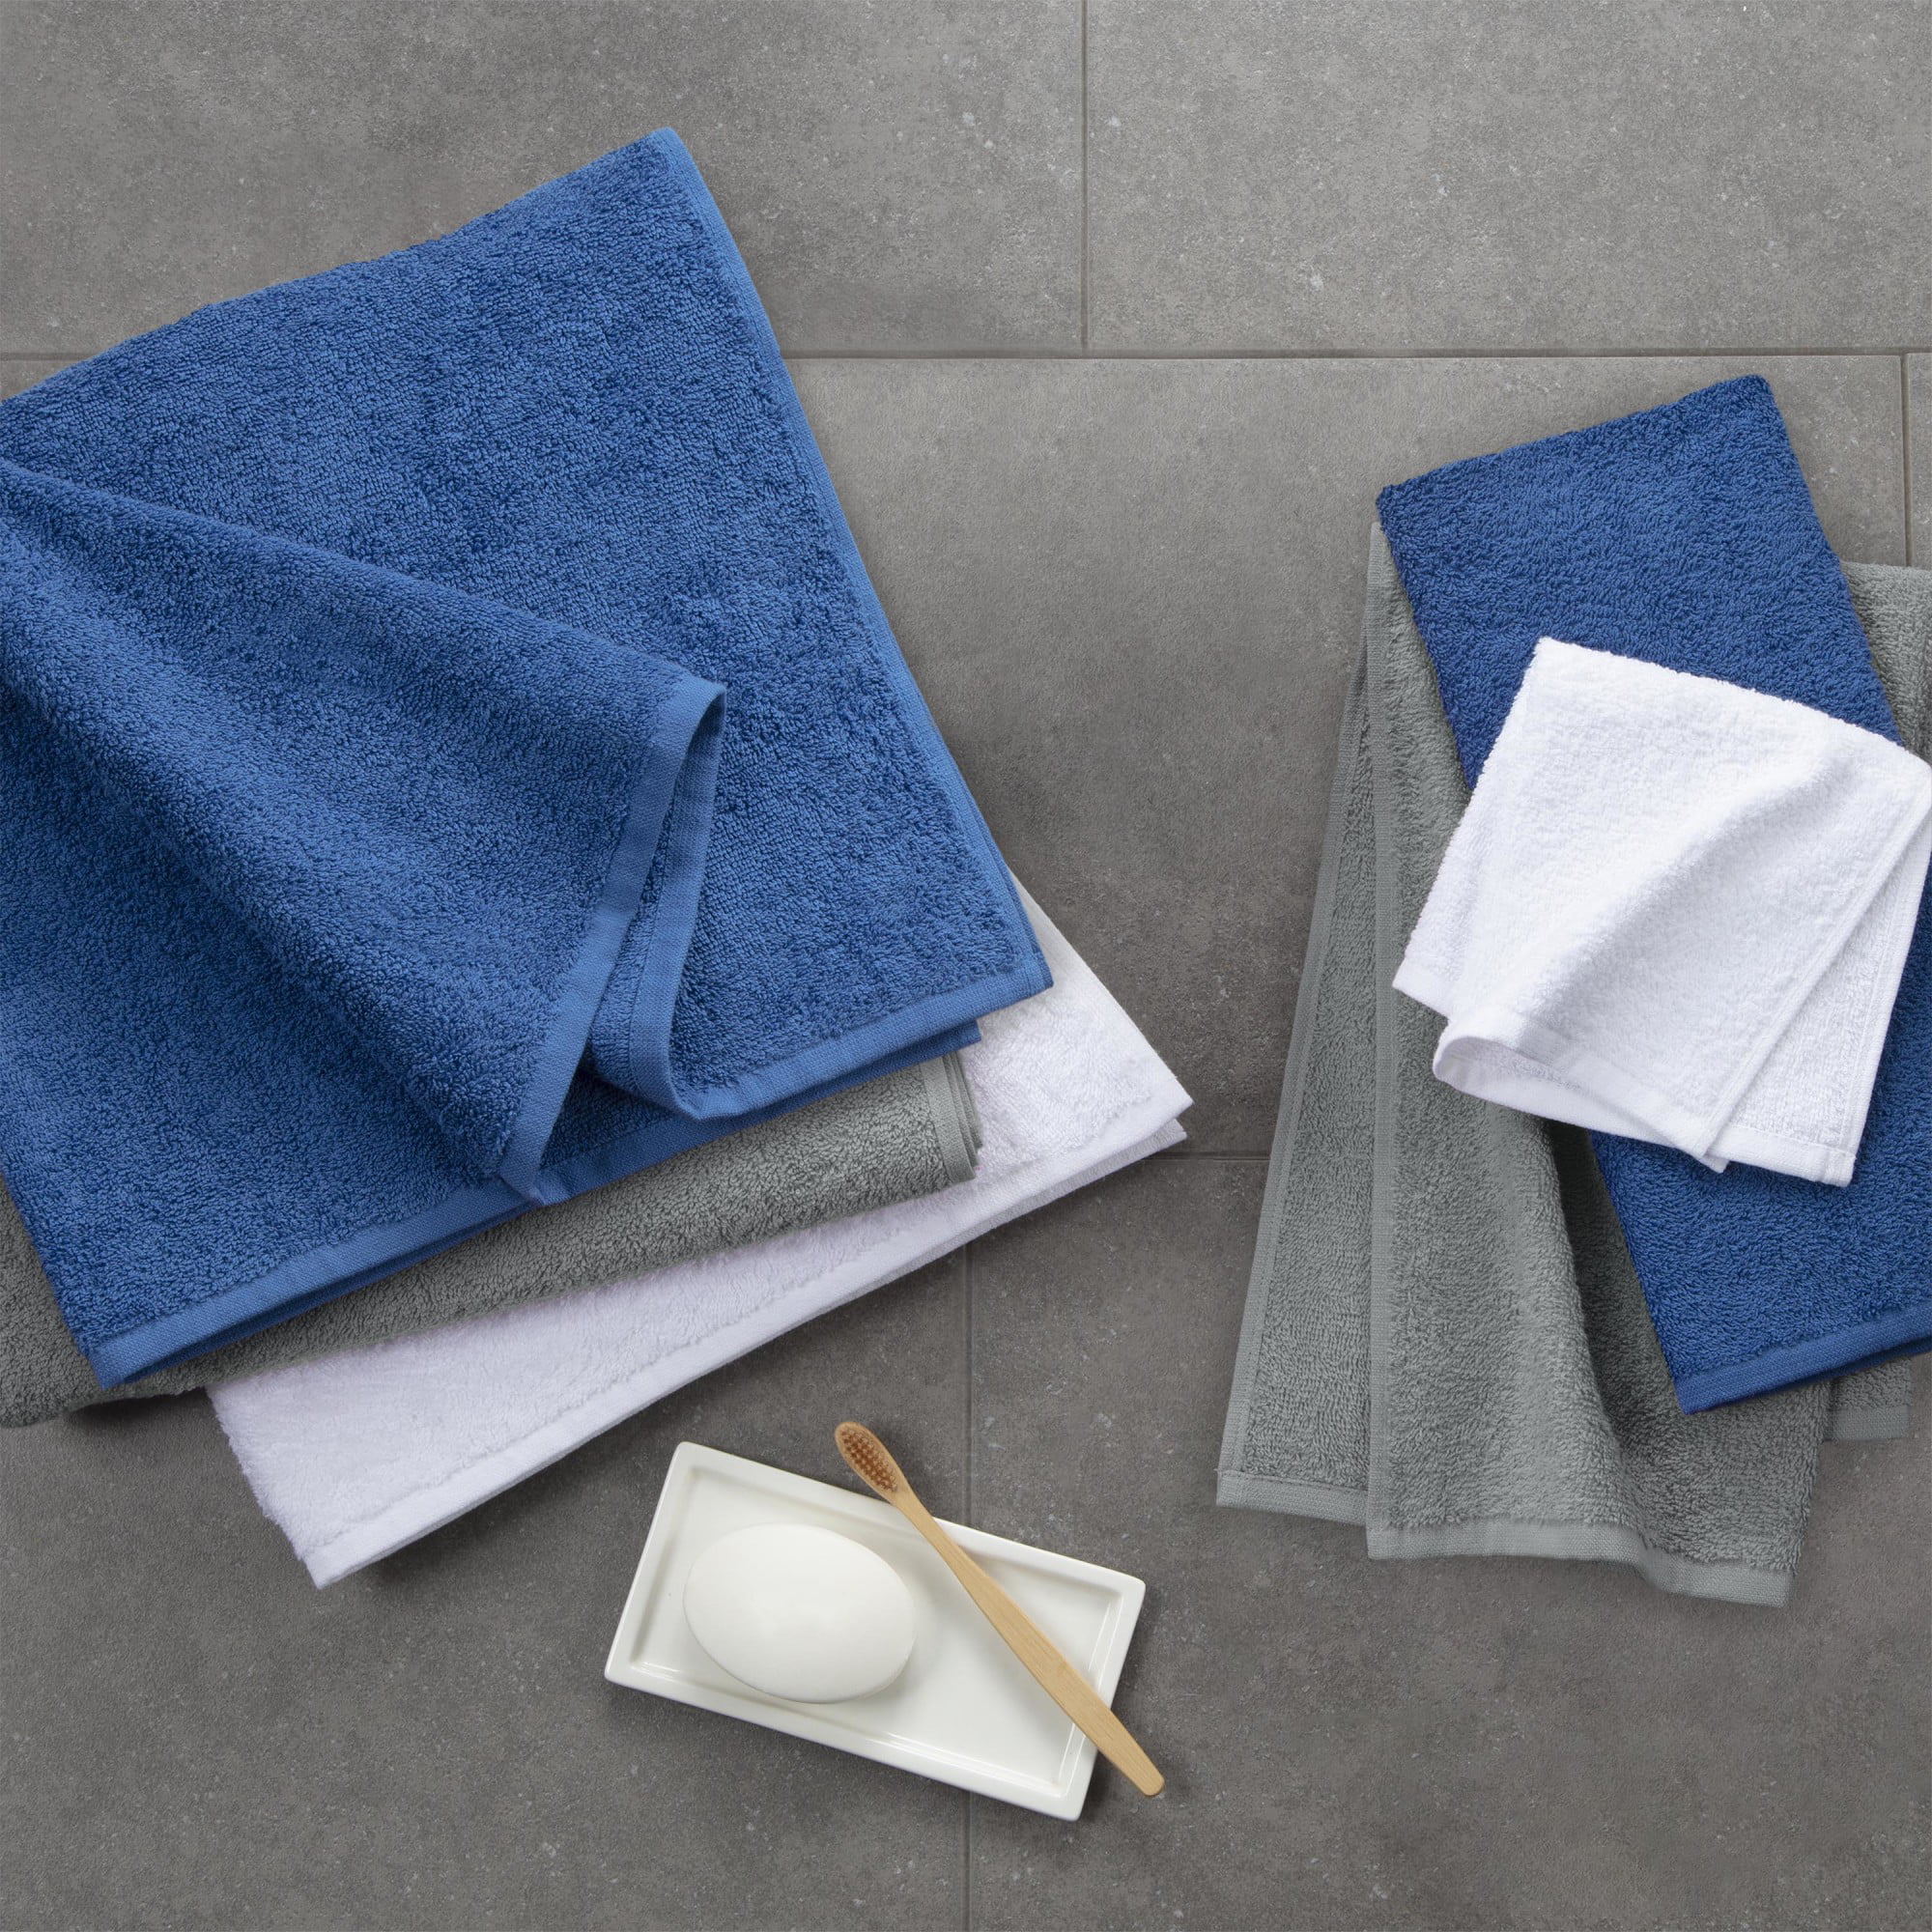 Martex Clean AF Antimicrobial Bath Towel Set, Blue, 6 Piece 